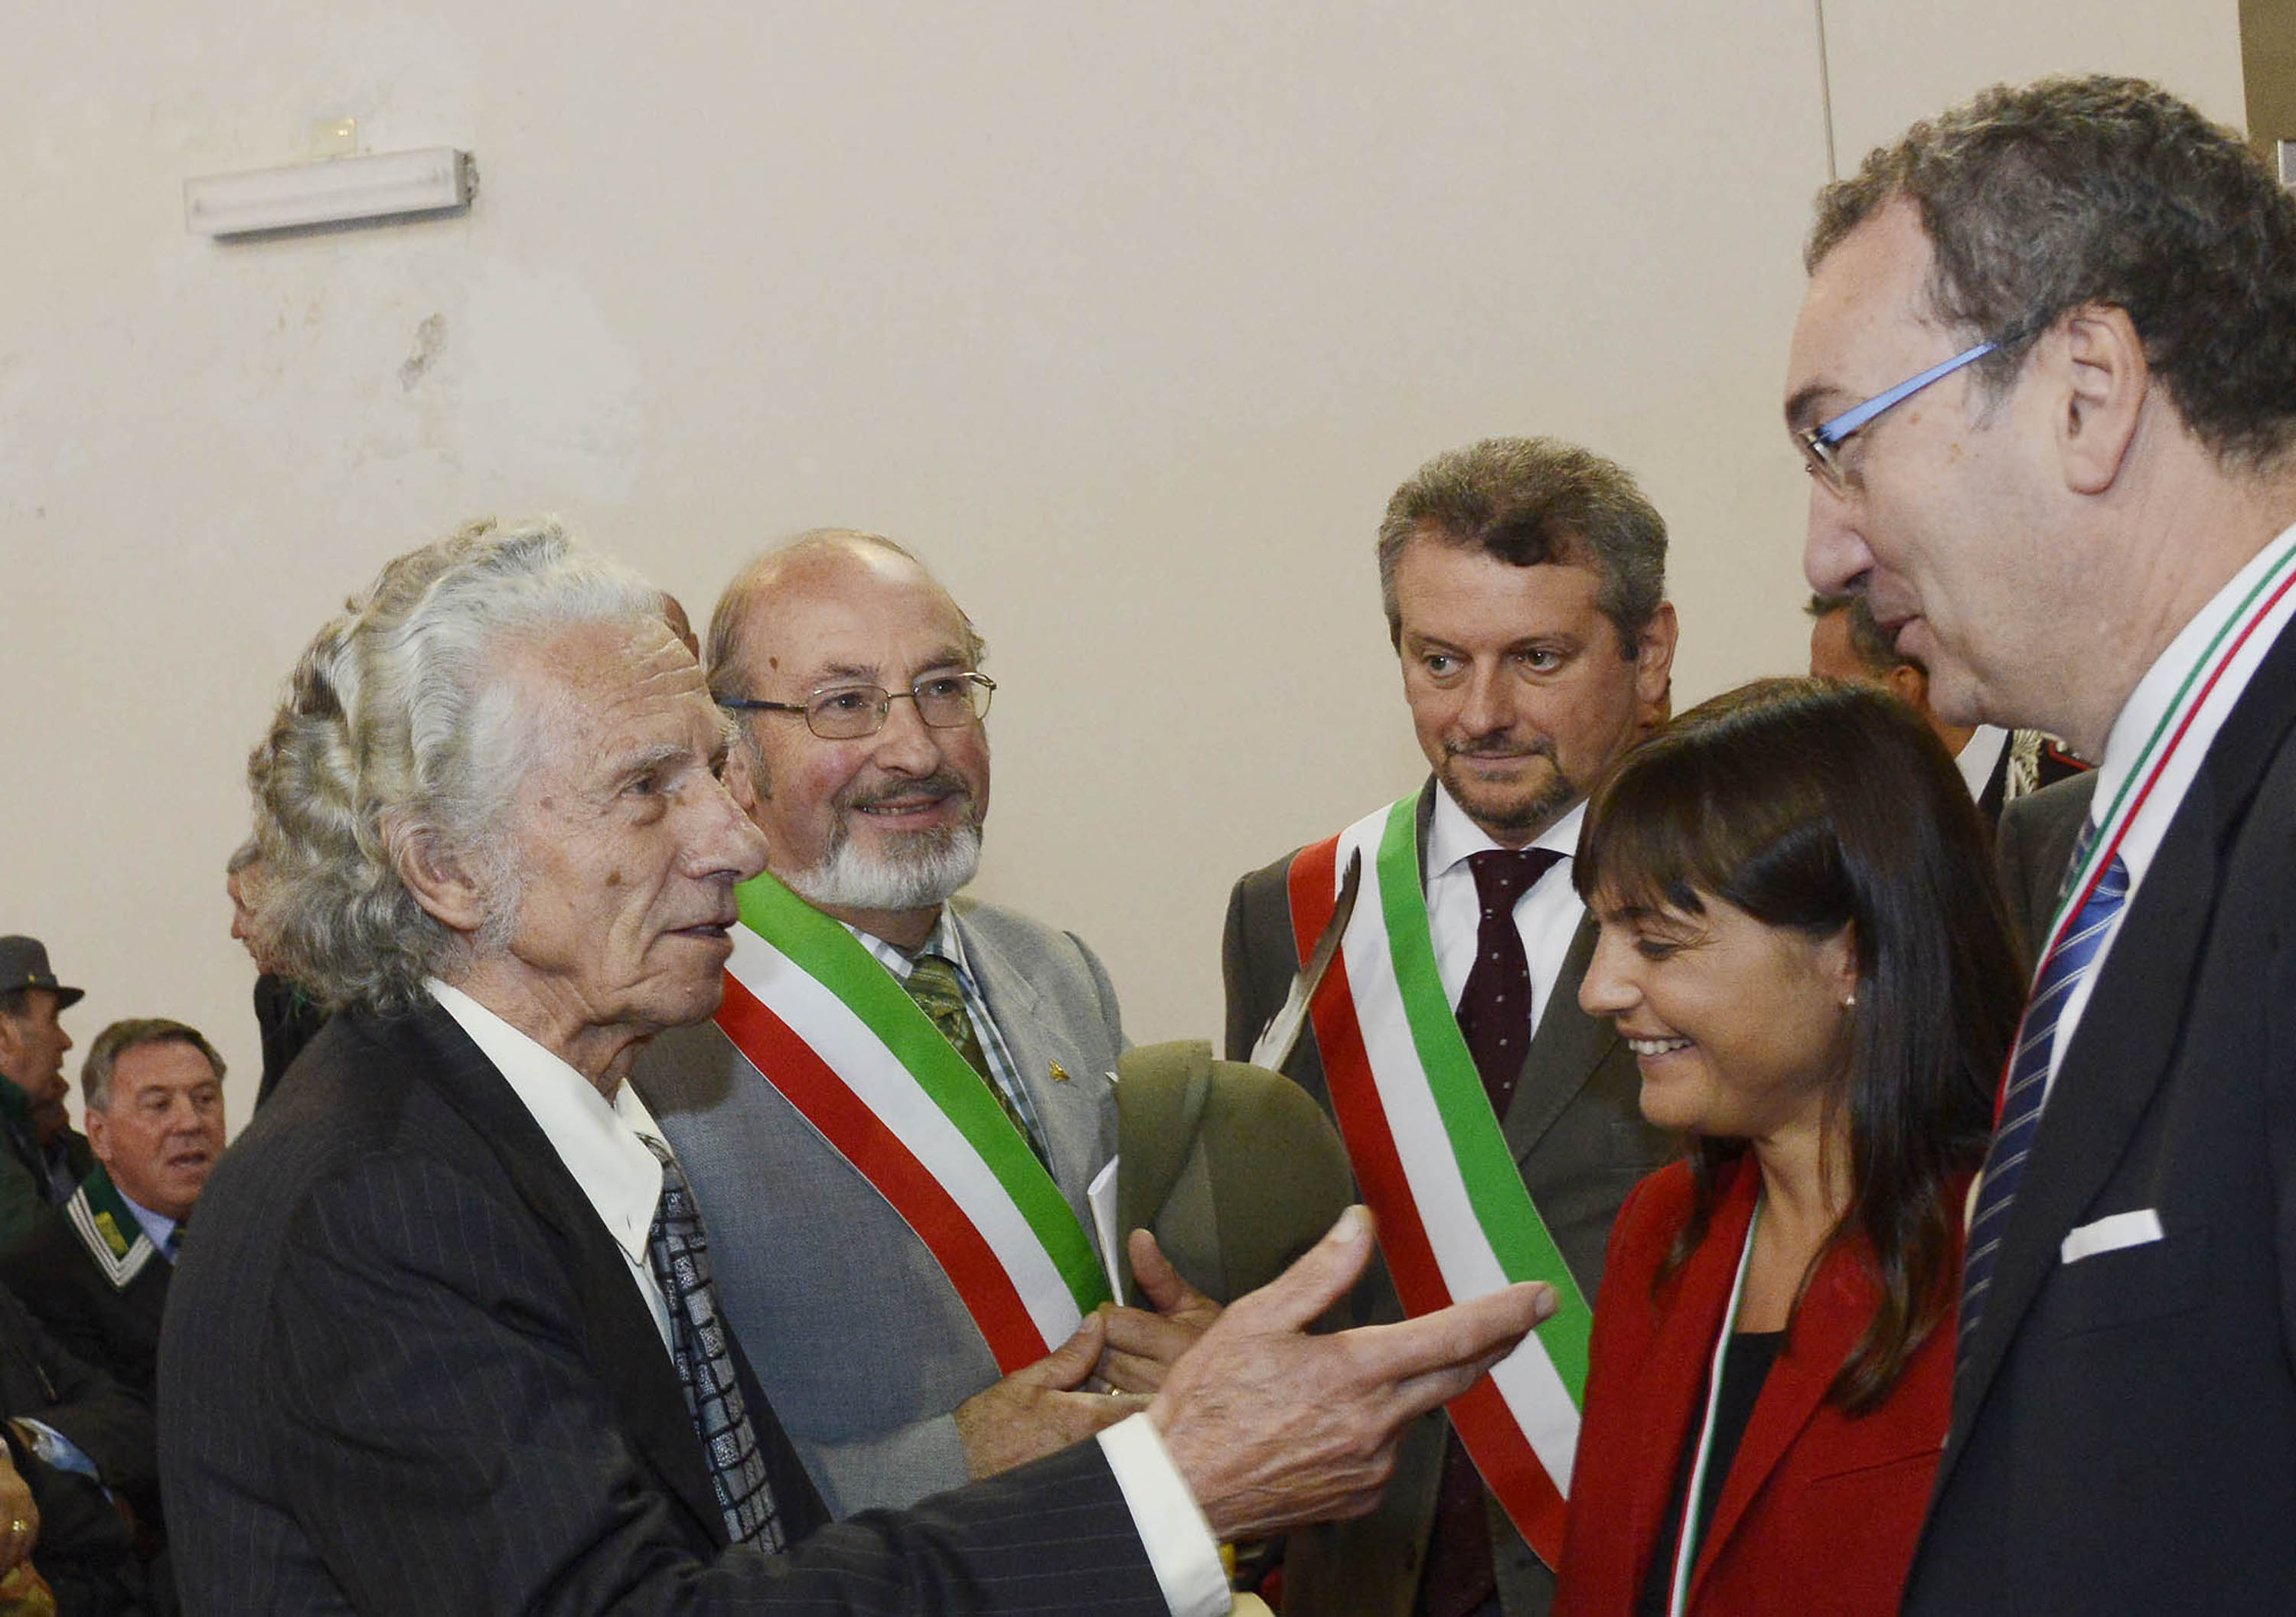 Debora Serracchiani (Presidente Friuli Venezia Giulia) e Sergio Bolzonello (Vicepresidente FVG e assessore regionale Risorse forestali) al 69° Raduno nazionale dei Forestali. (Cividale del Friuli 29/09/13)